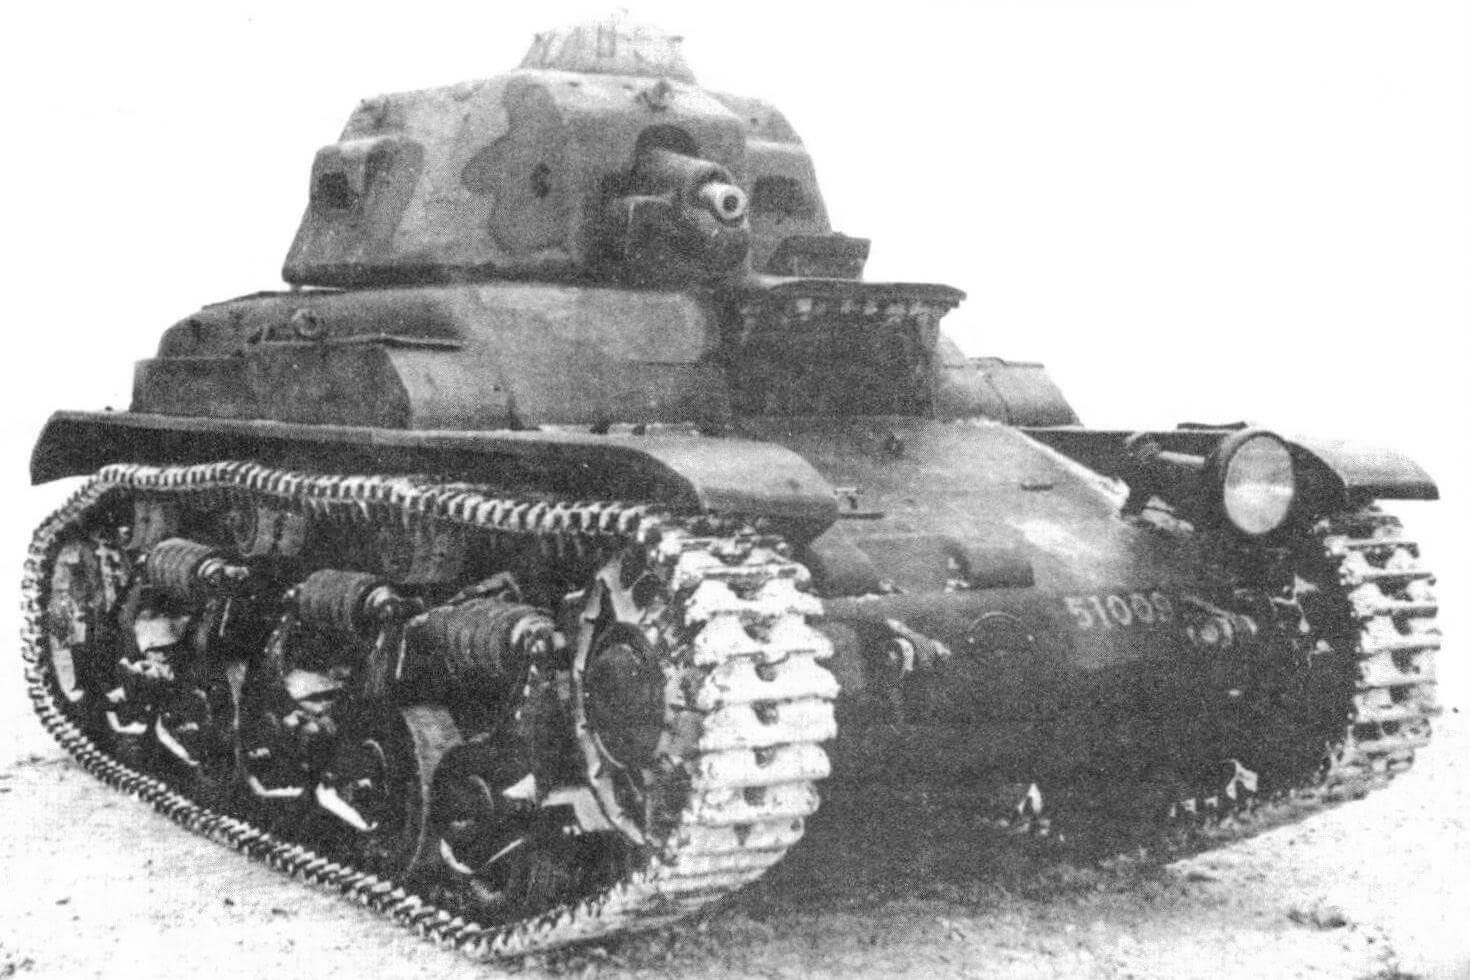 Танк R35, захваченный Красной Армией в Польше в сентябре 1939 года. Весной 1940 года эта машина проходила испытания на НИБТПолигоне в Кубинке